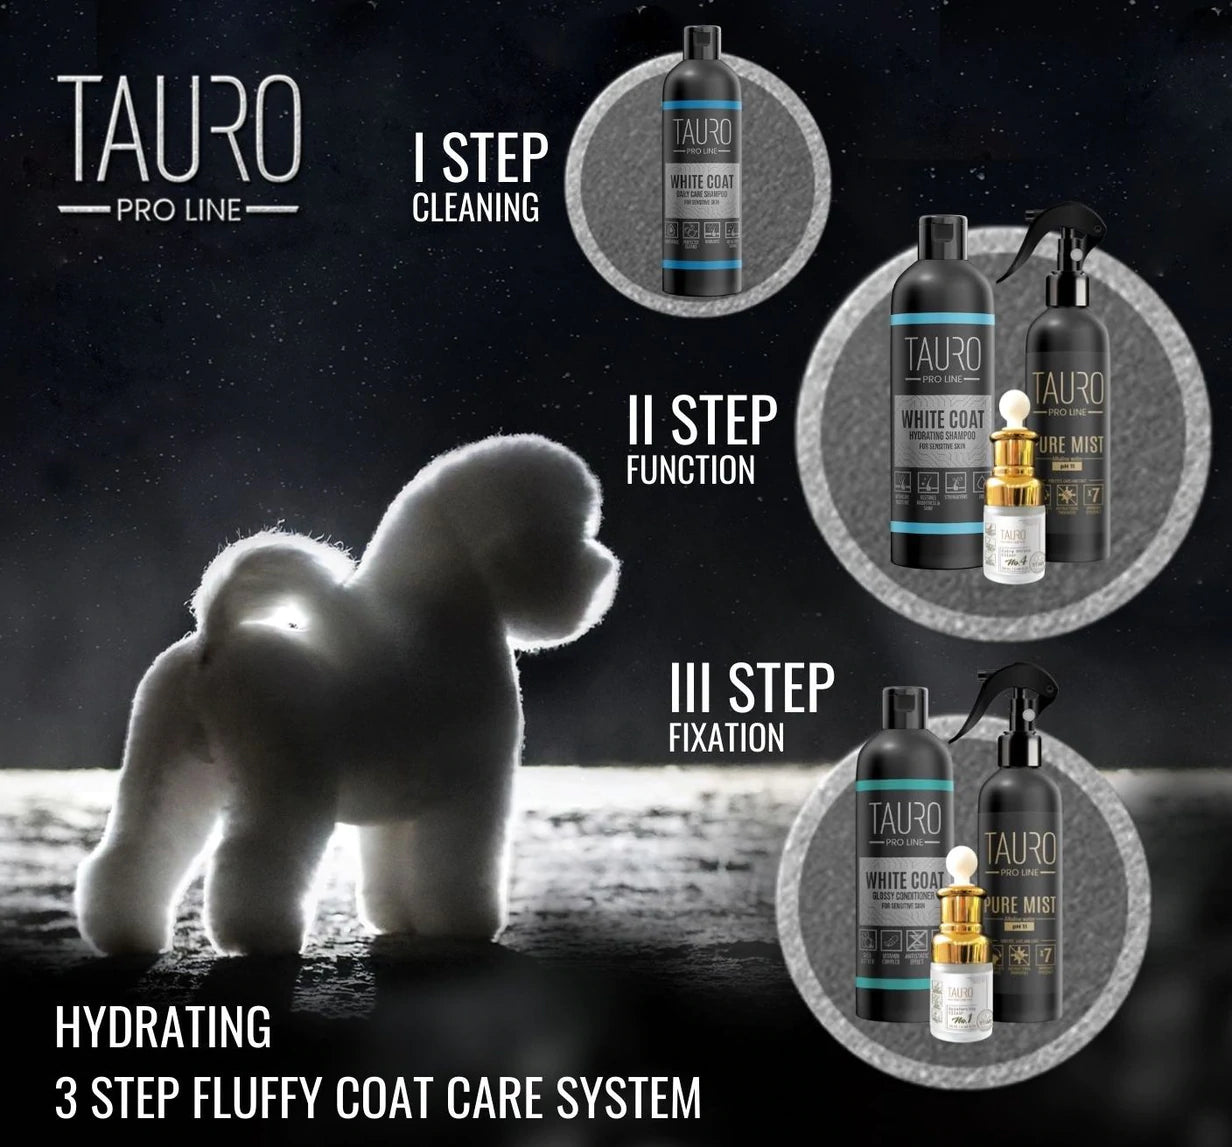 Tauro Pro Line - White Coat whitening shampoo 33.8FL OZ